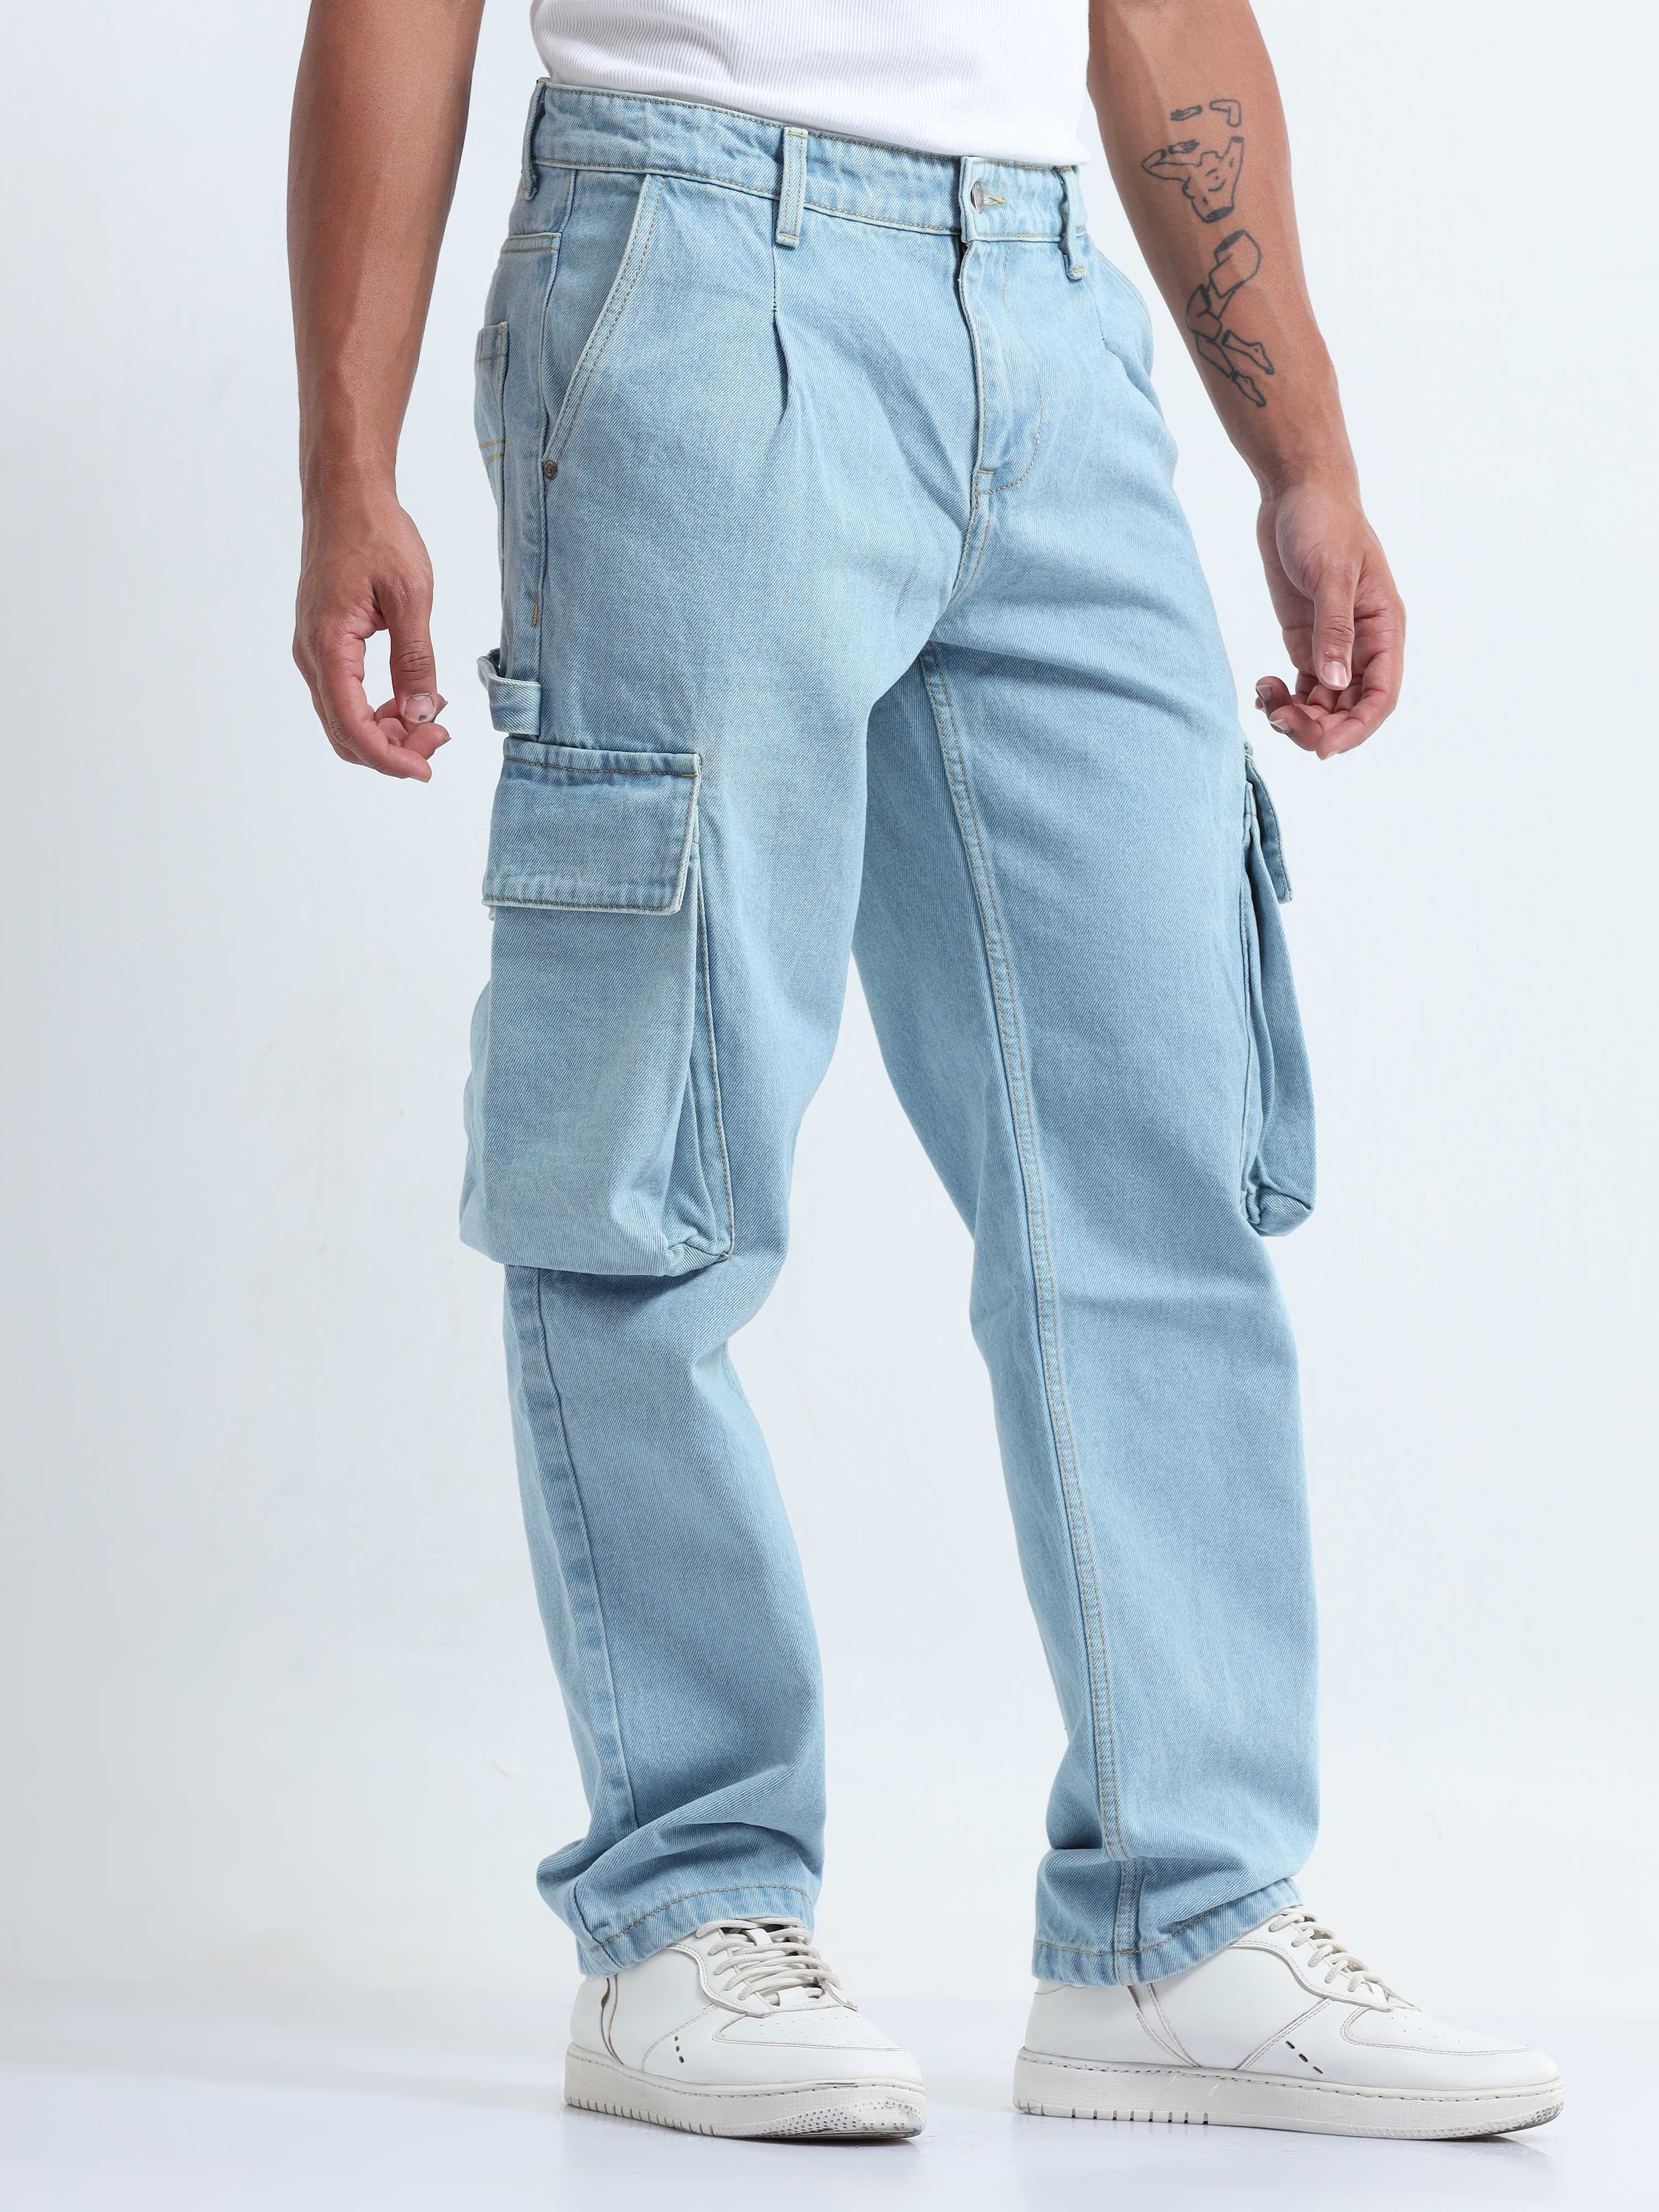 Men Cargo Jeans - Buy Men Cargo Jeans online in India